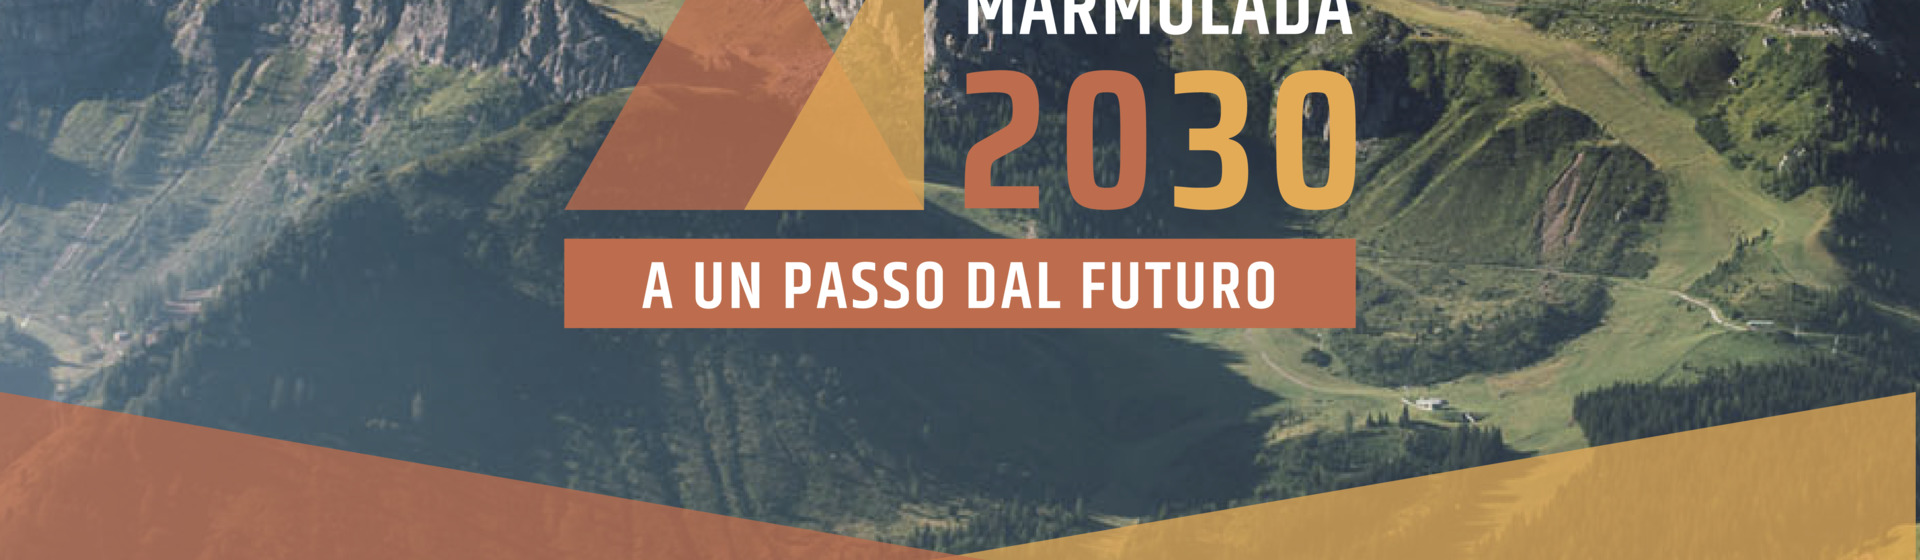 Presentazione pubblica dei risultati del progetto "Arabba Marmolada 2030, a un passo dal futuro"